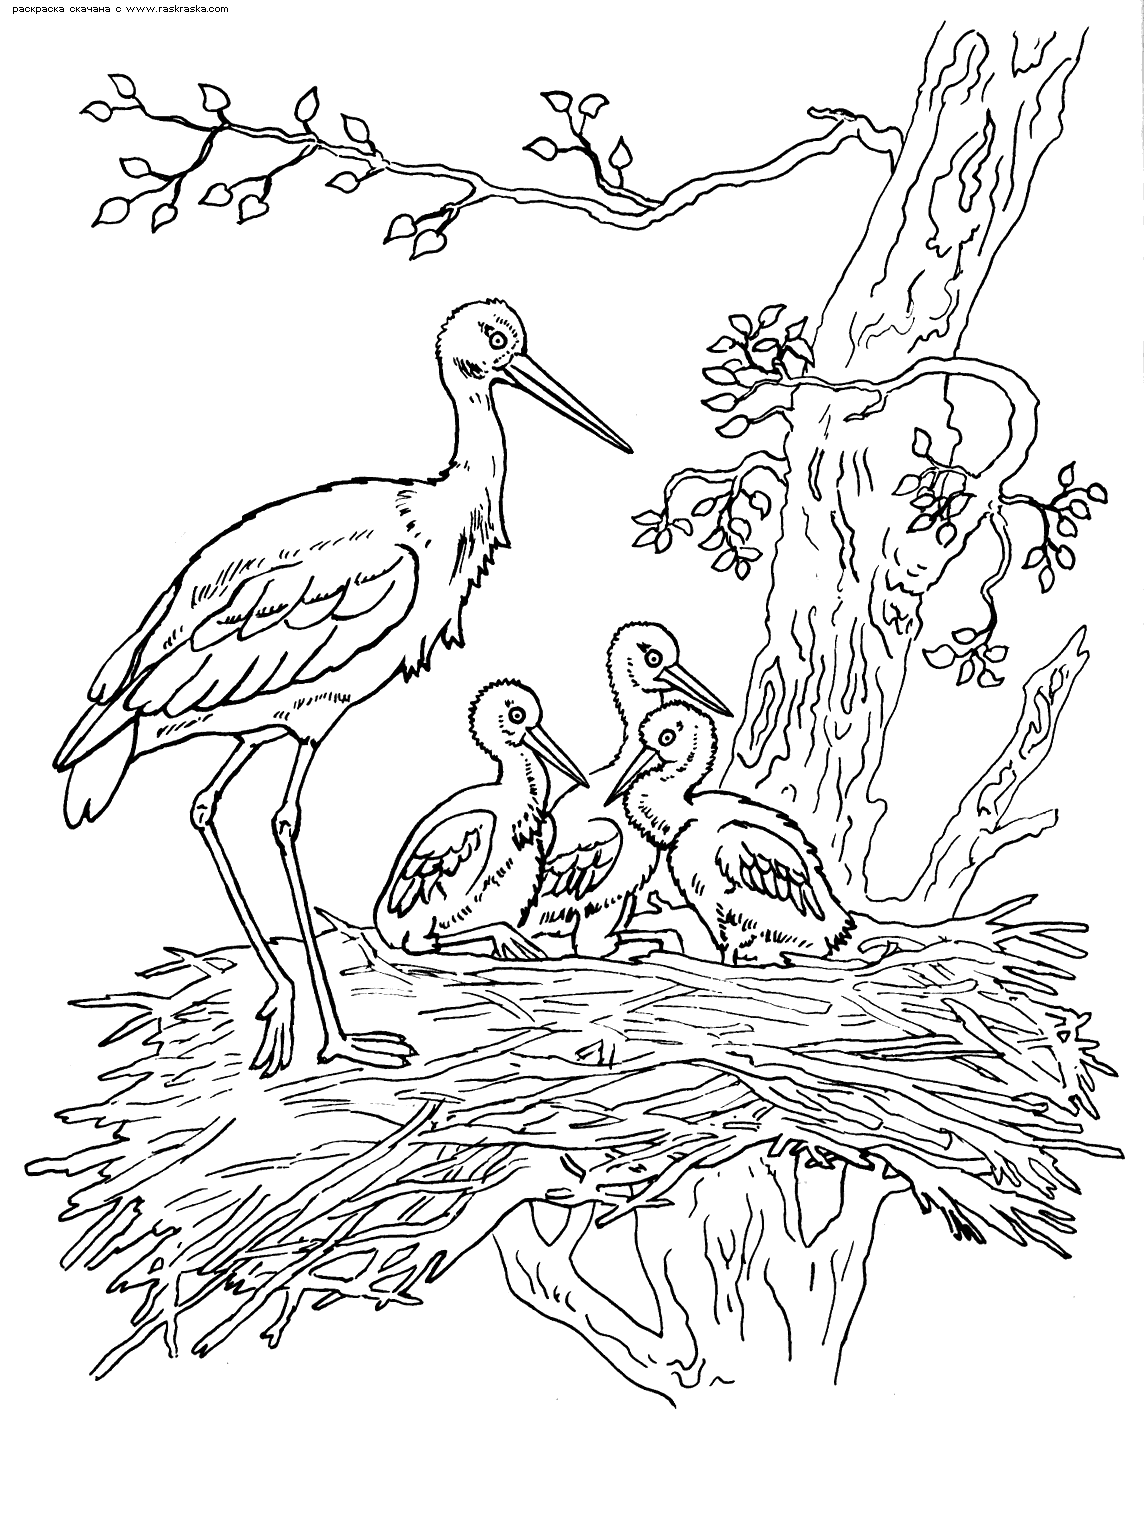 Stork family